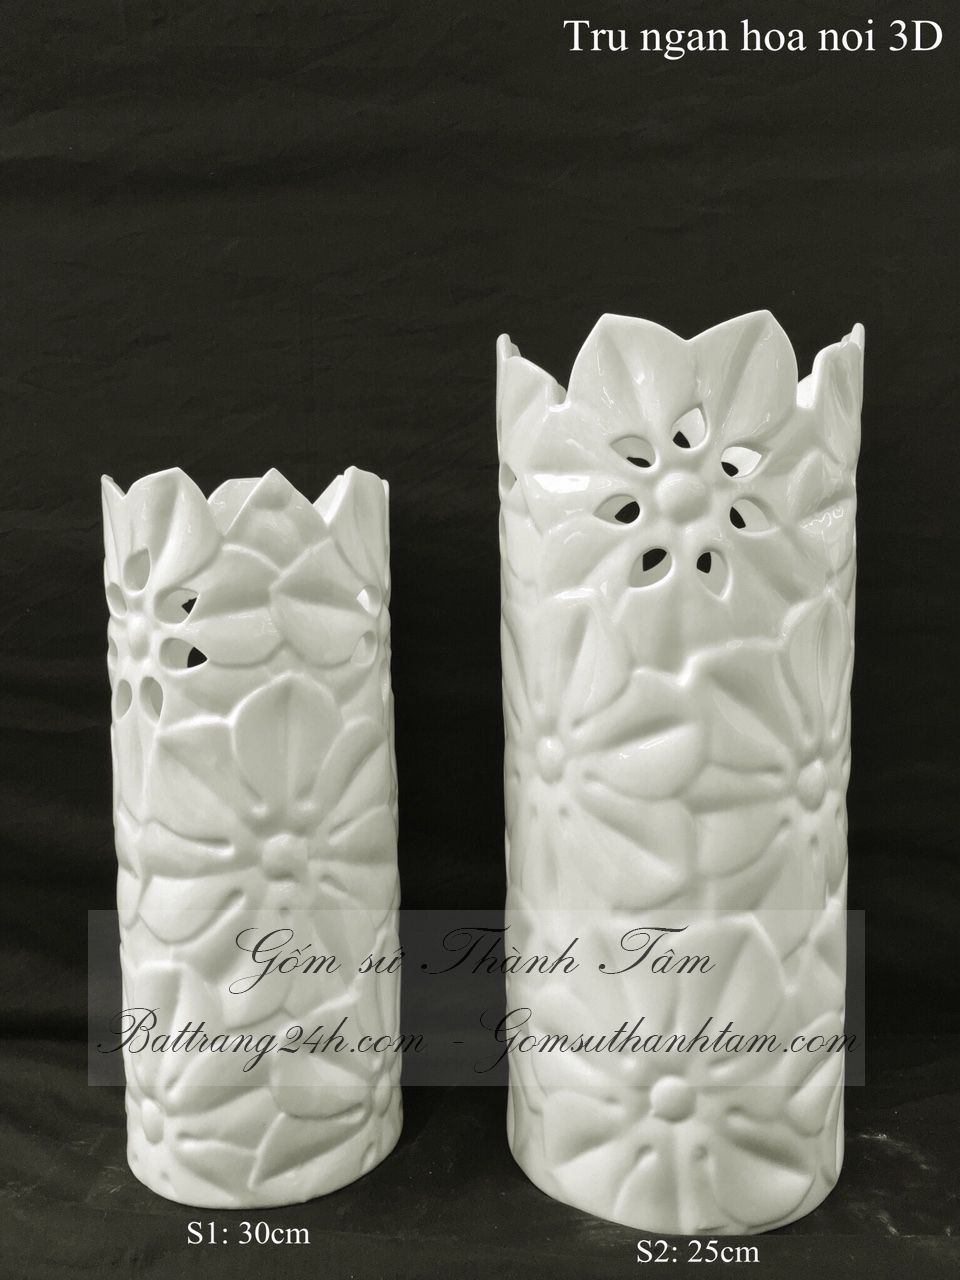 Bán bình hoa trang trí màu men trắng nhỏ để bàn phòng khách bàn làm việc bằng gốm sứ nghệ thuật